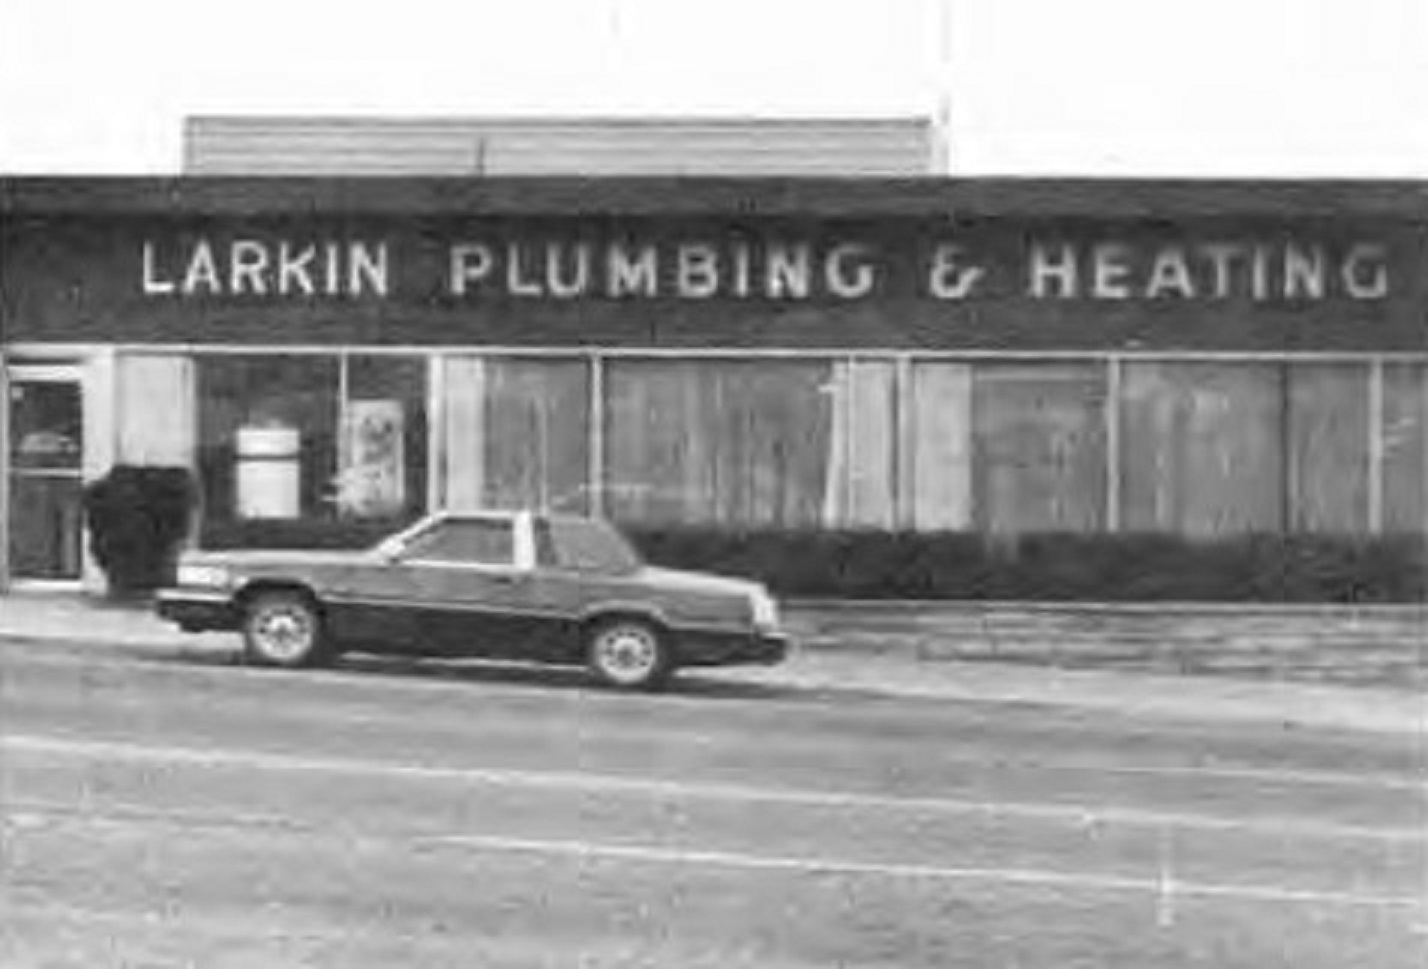 Front of the Larkin Plumbing & Heating building